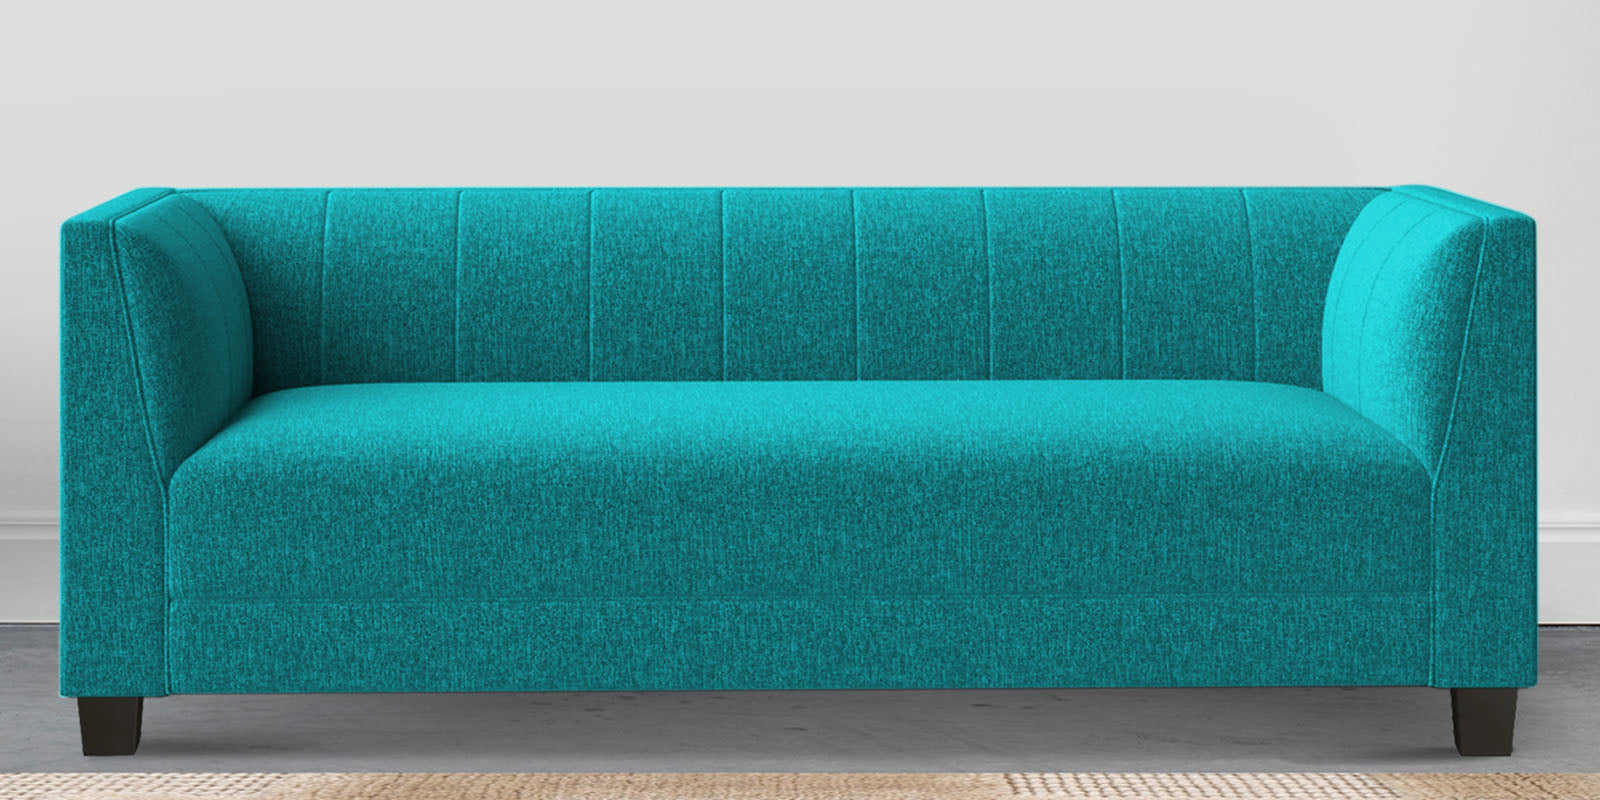 Chastin Fabric 3 Seater Sofa in Sea Green Colour